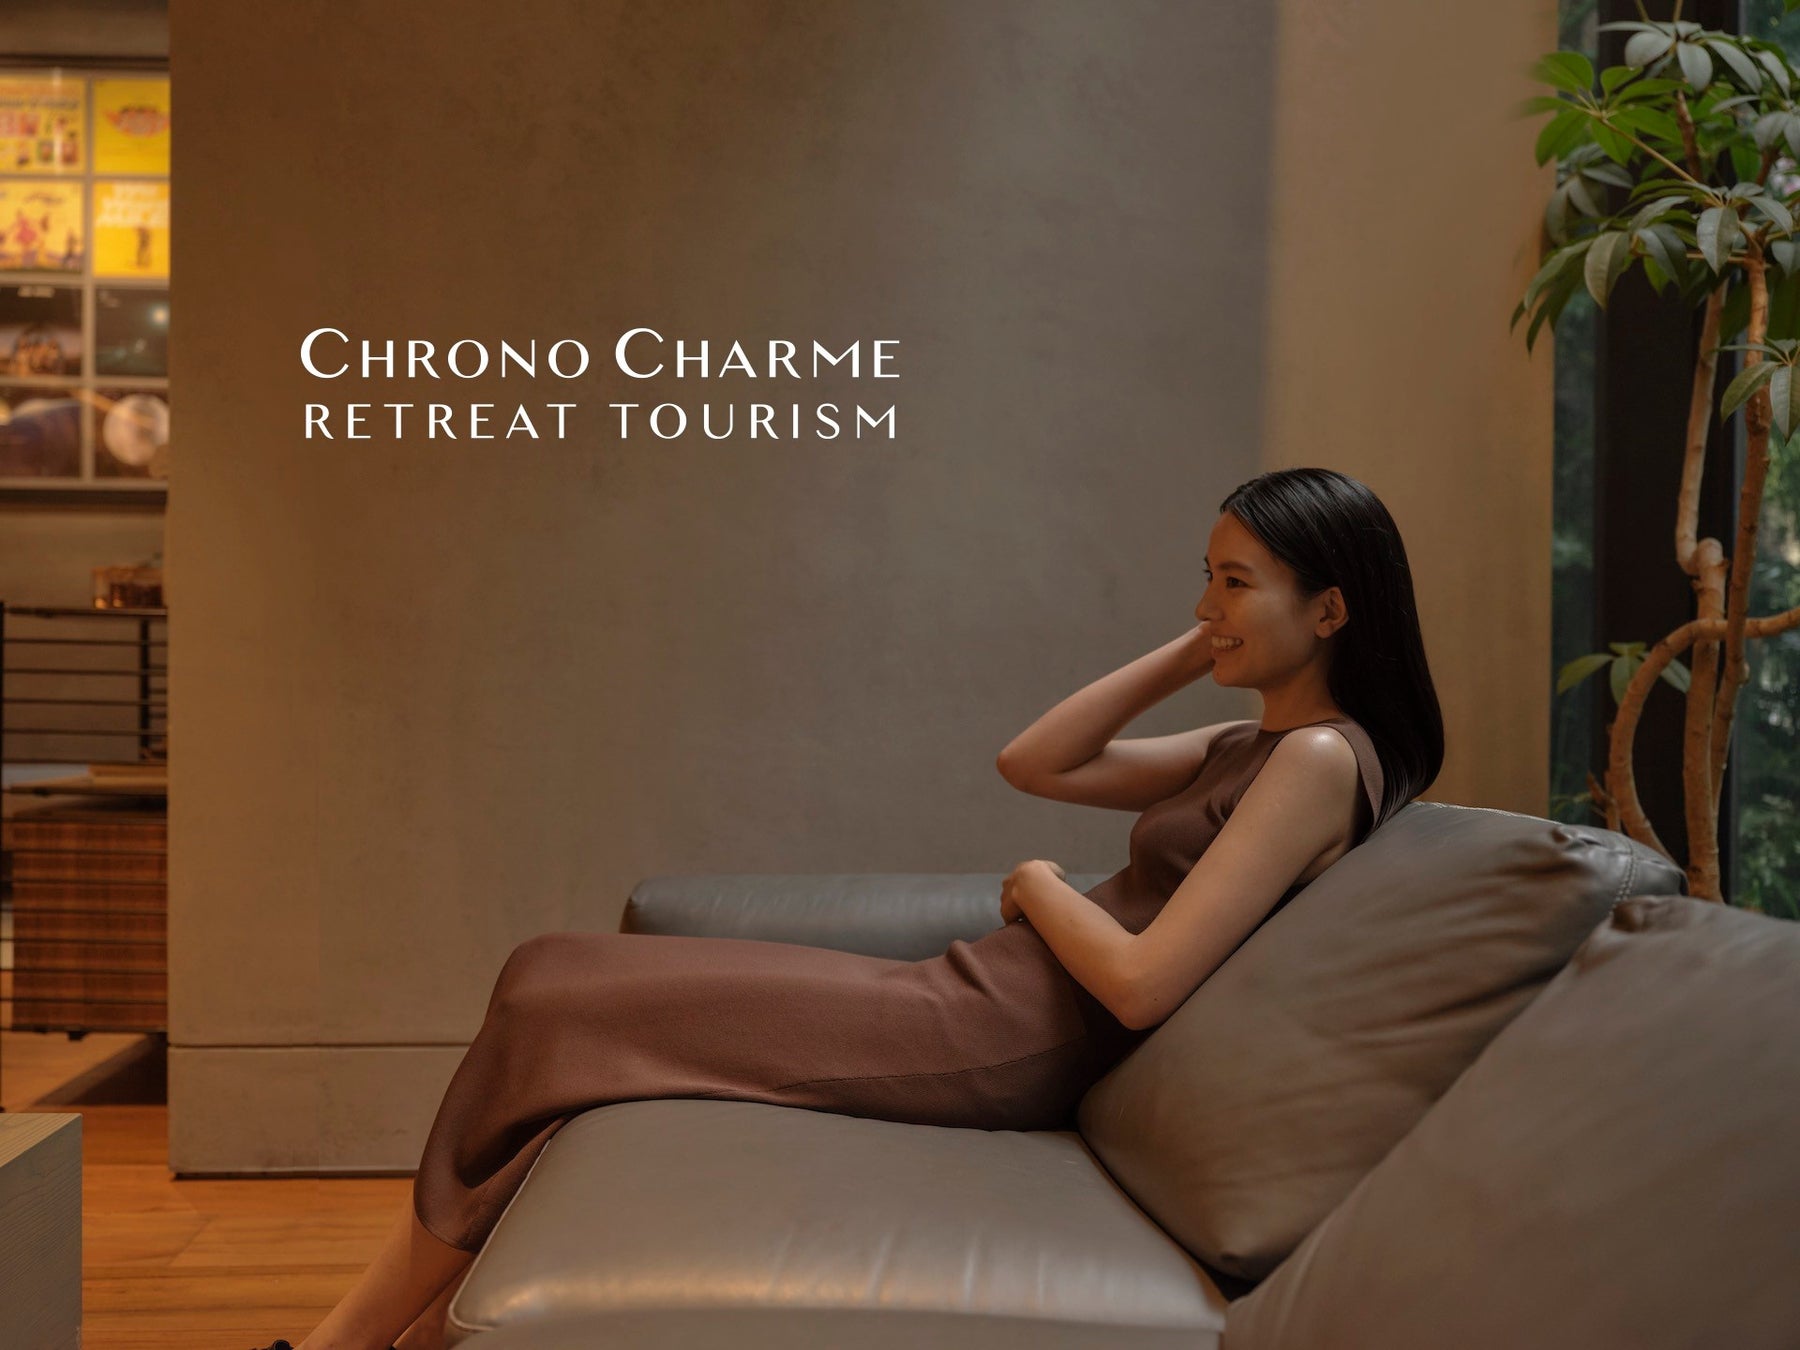 「クロノシャルム 」が、美容領域から旅をデザインするプロジェクト「CHRONO CHARME RETREAT TOURISM（クロノシャルム リトリート ツーリズム）」を開始のサブ画像1